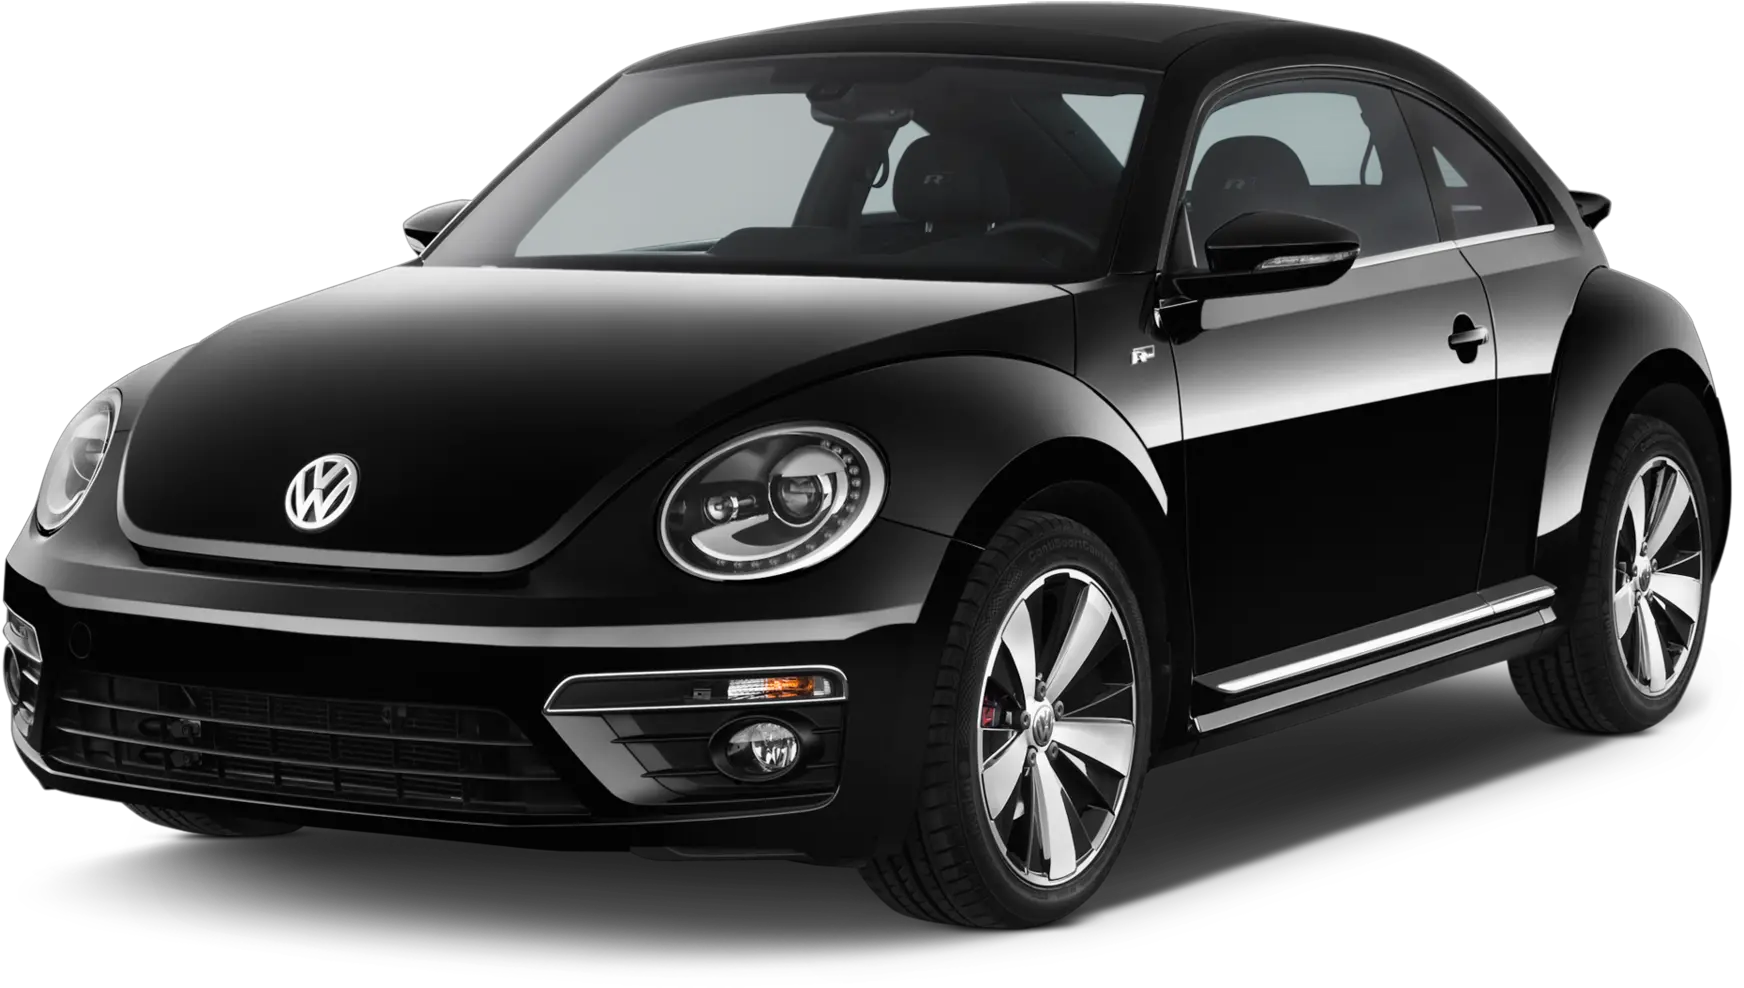 2015 Volkswagen Beetle Buyeru0027s Guide Reviews Specs 2014 Volkswagen Beetle Black Png Tc Icon Classic